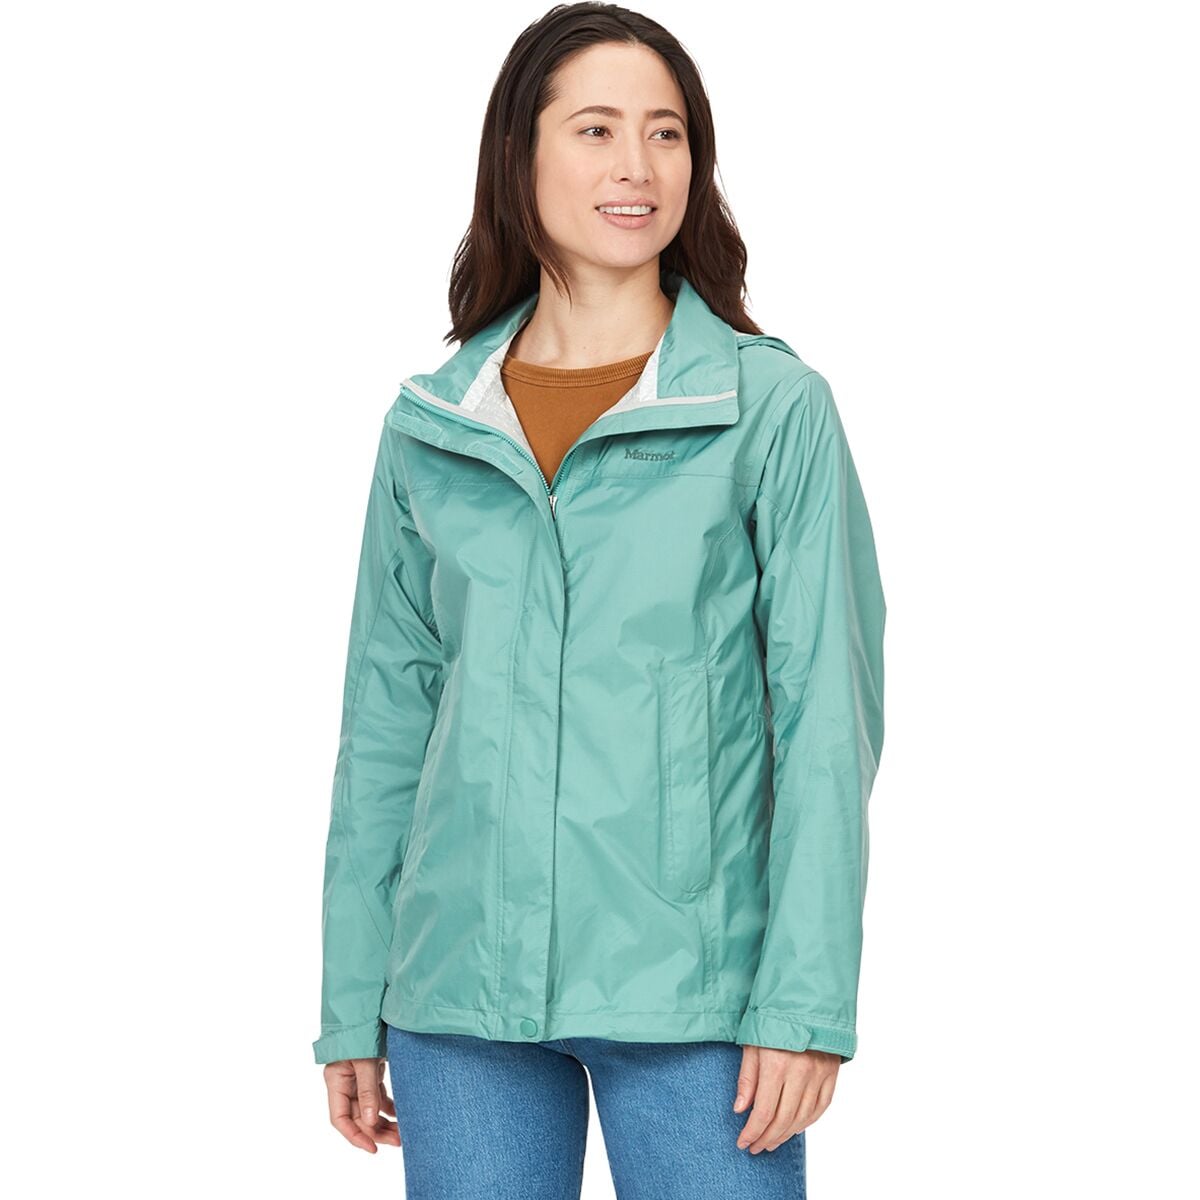 Marmot PreCip Eco Jacket - Women's - Clothing | Backcountry